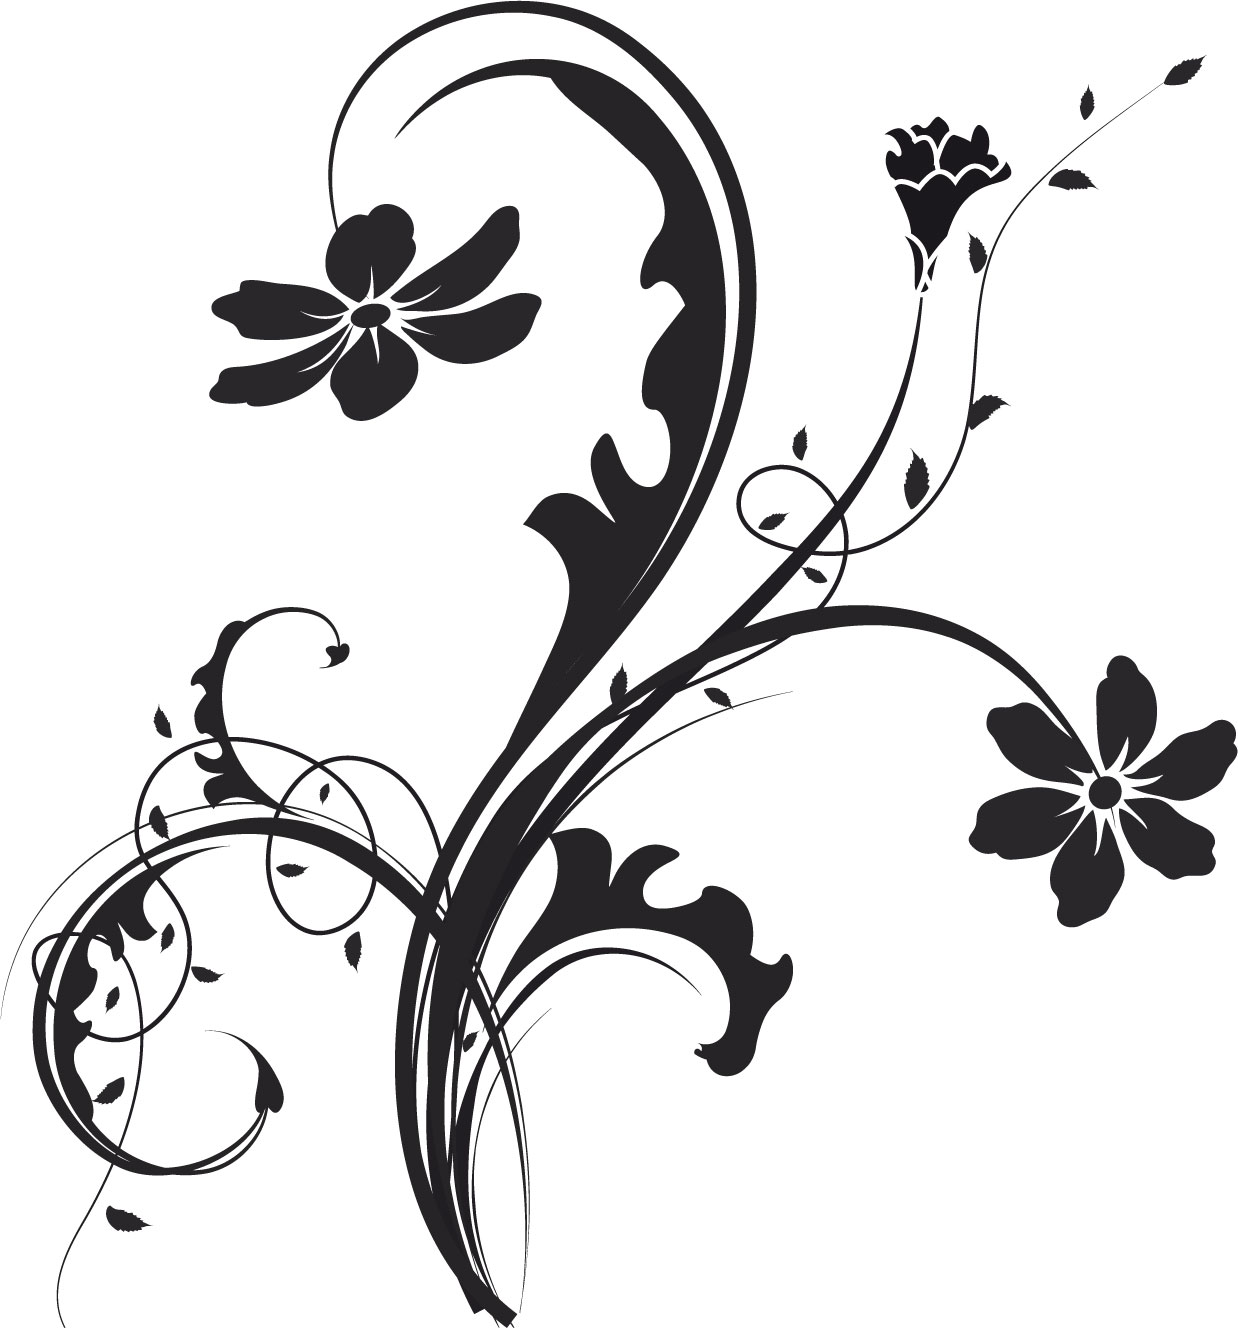 かっこいい 花 イラスト 白黒